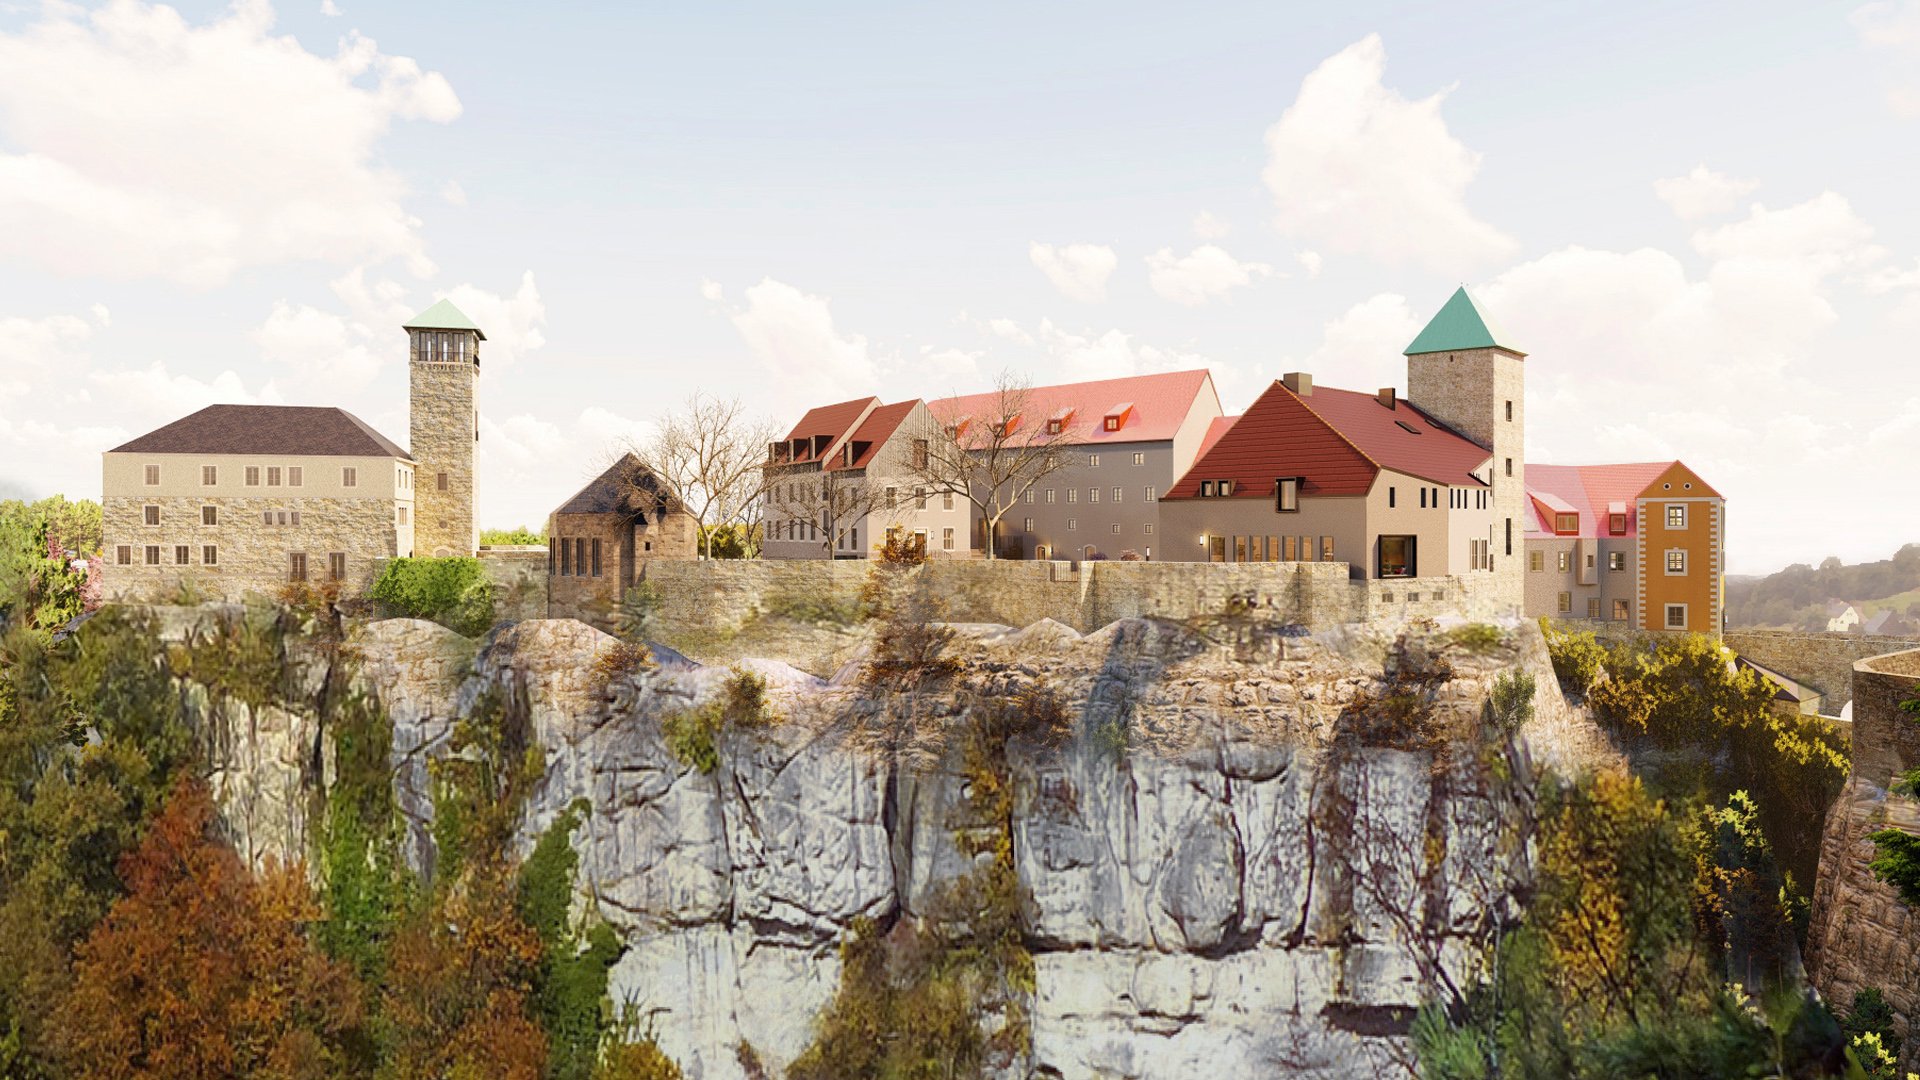 barrierefreier Umbau und denmalgerechte Sanierung der Burg Hohnstein in der Sächsischen Schweiz